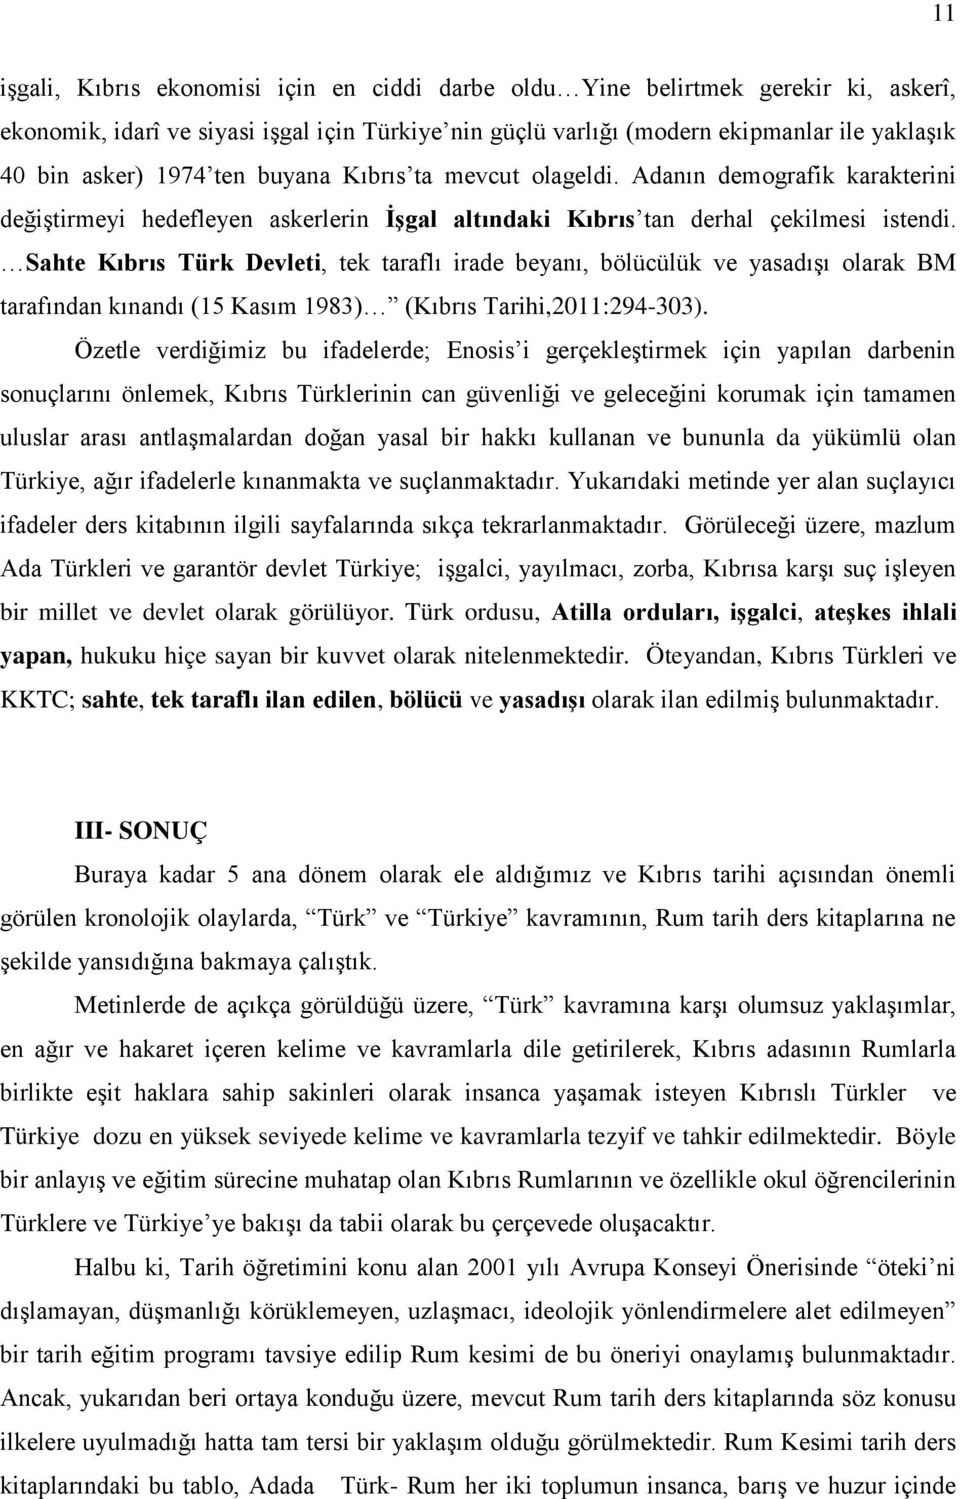 Sahte Kıbrıs Türk Devleti, tek taraflı irade beyanı, bölücülük ve yasadışı olarak BM tarafından kınandı (15 Kasım 1983) (Kıbrıs Tarihi,2011:294-303).